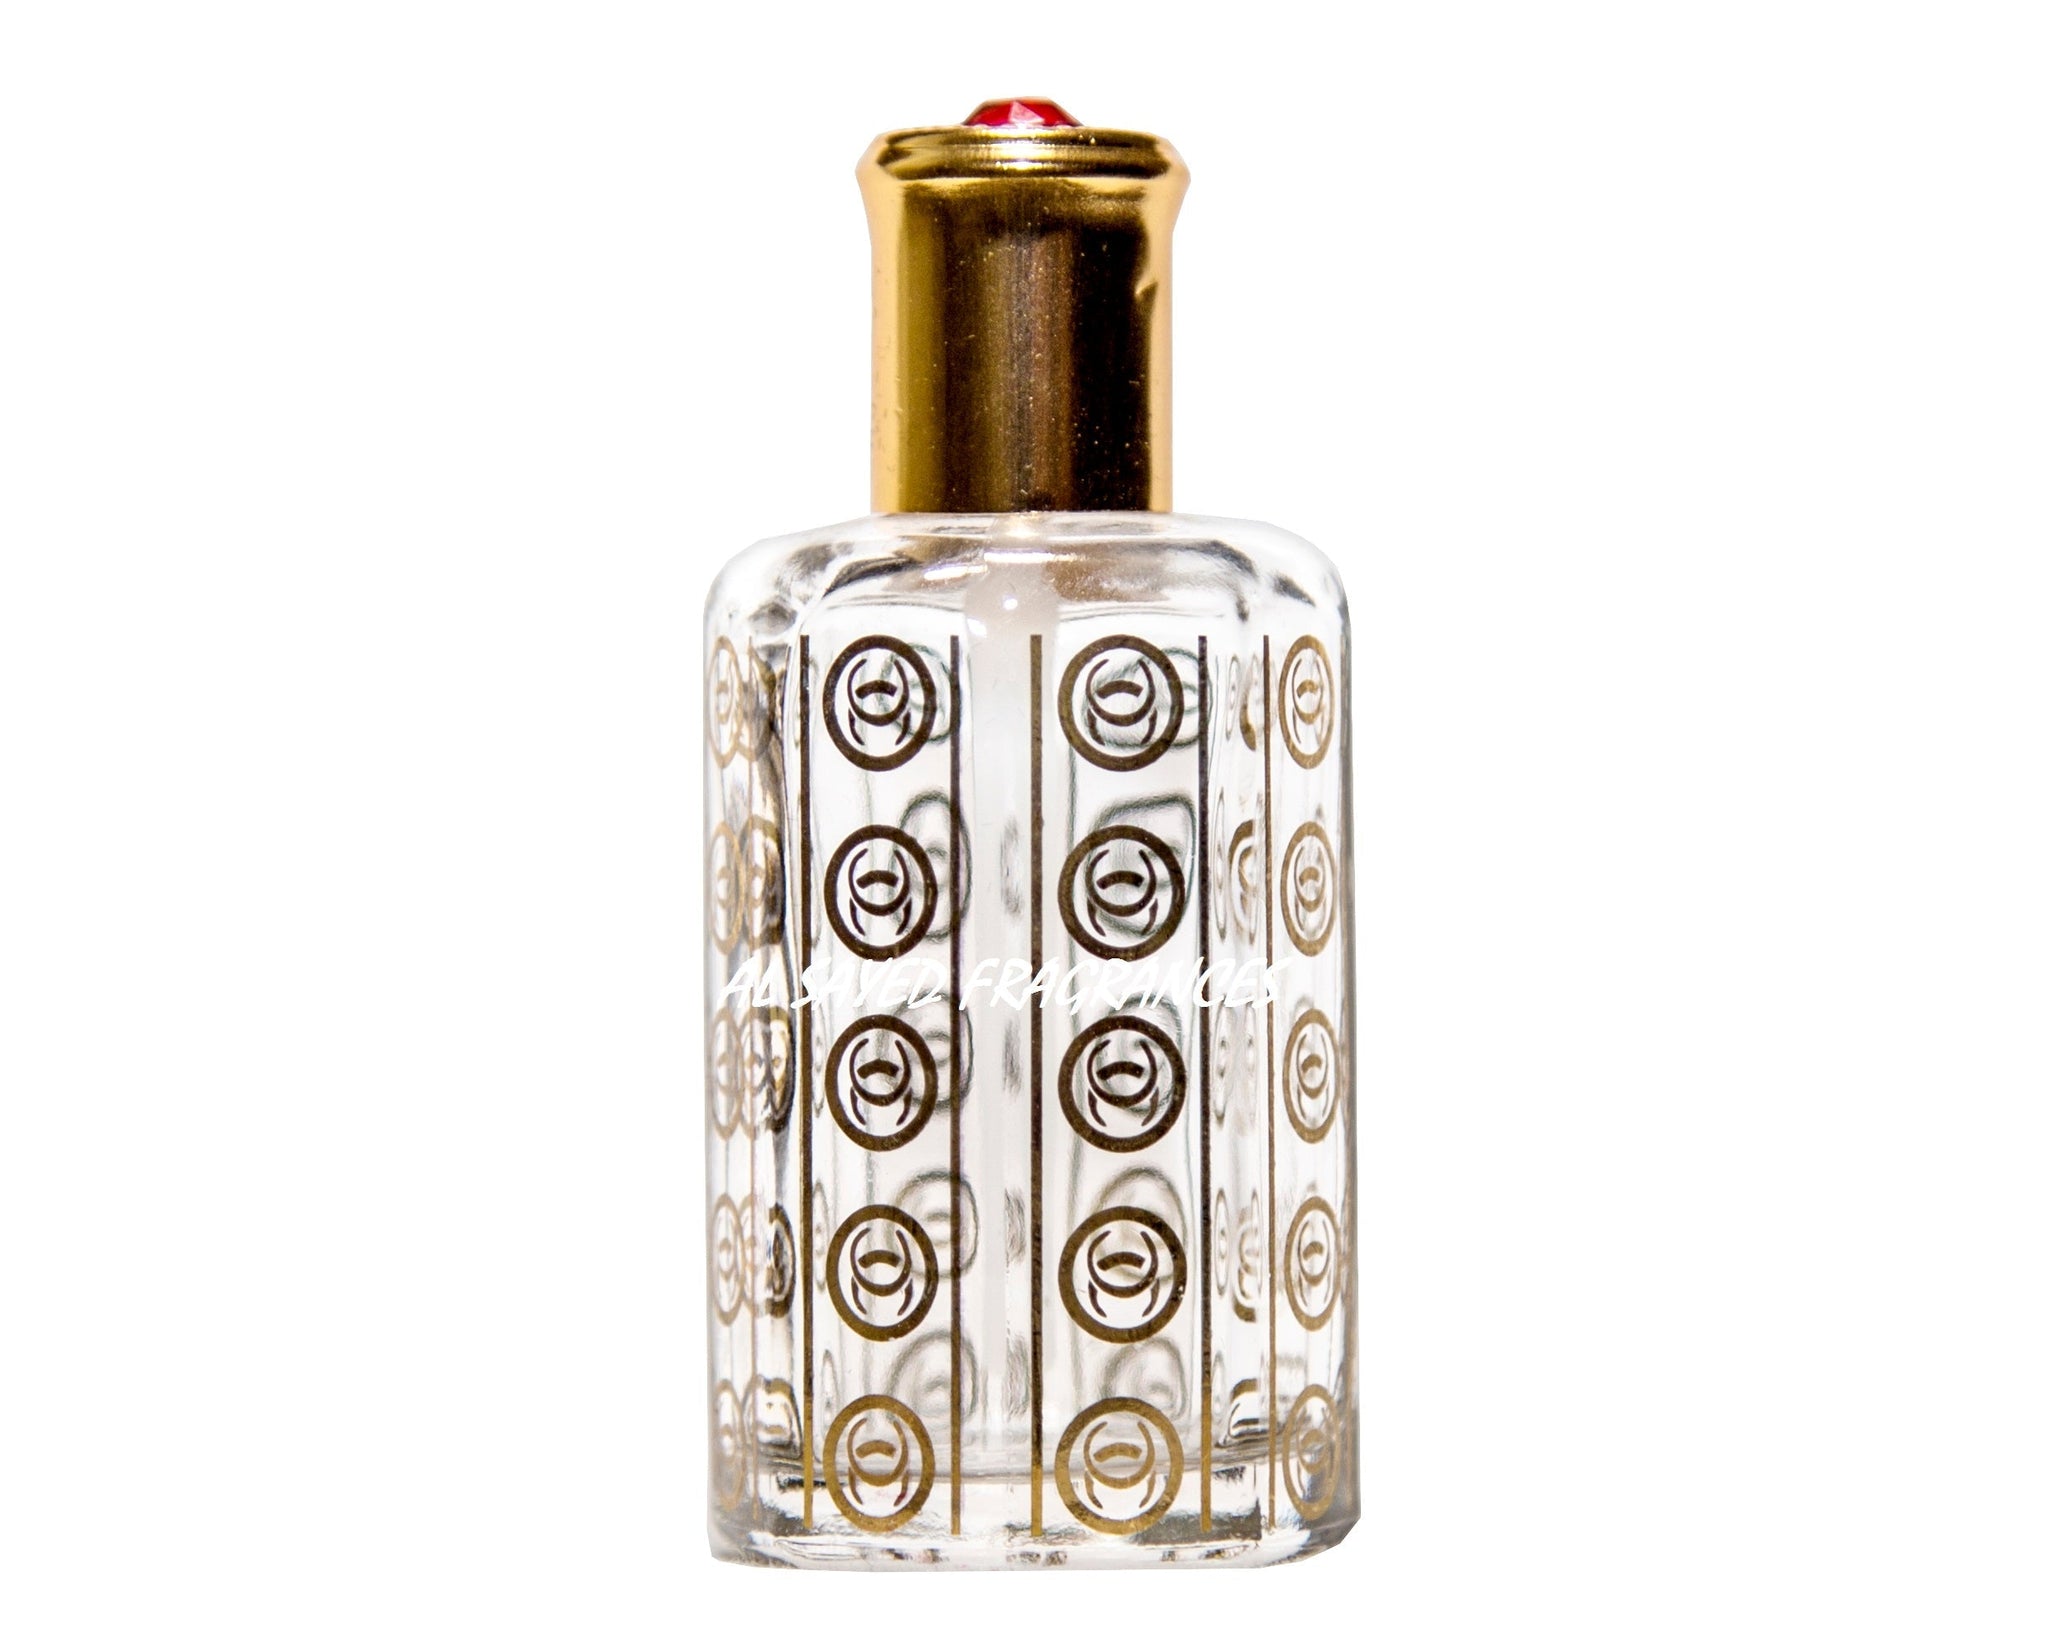 Fleur du Desert - Louis Vuitton #parfums #parfumereccomended